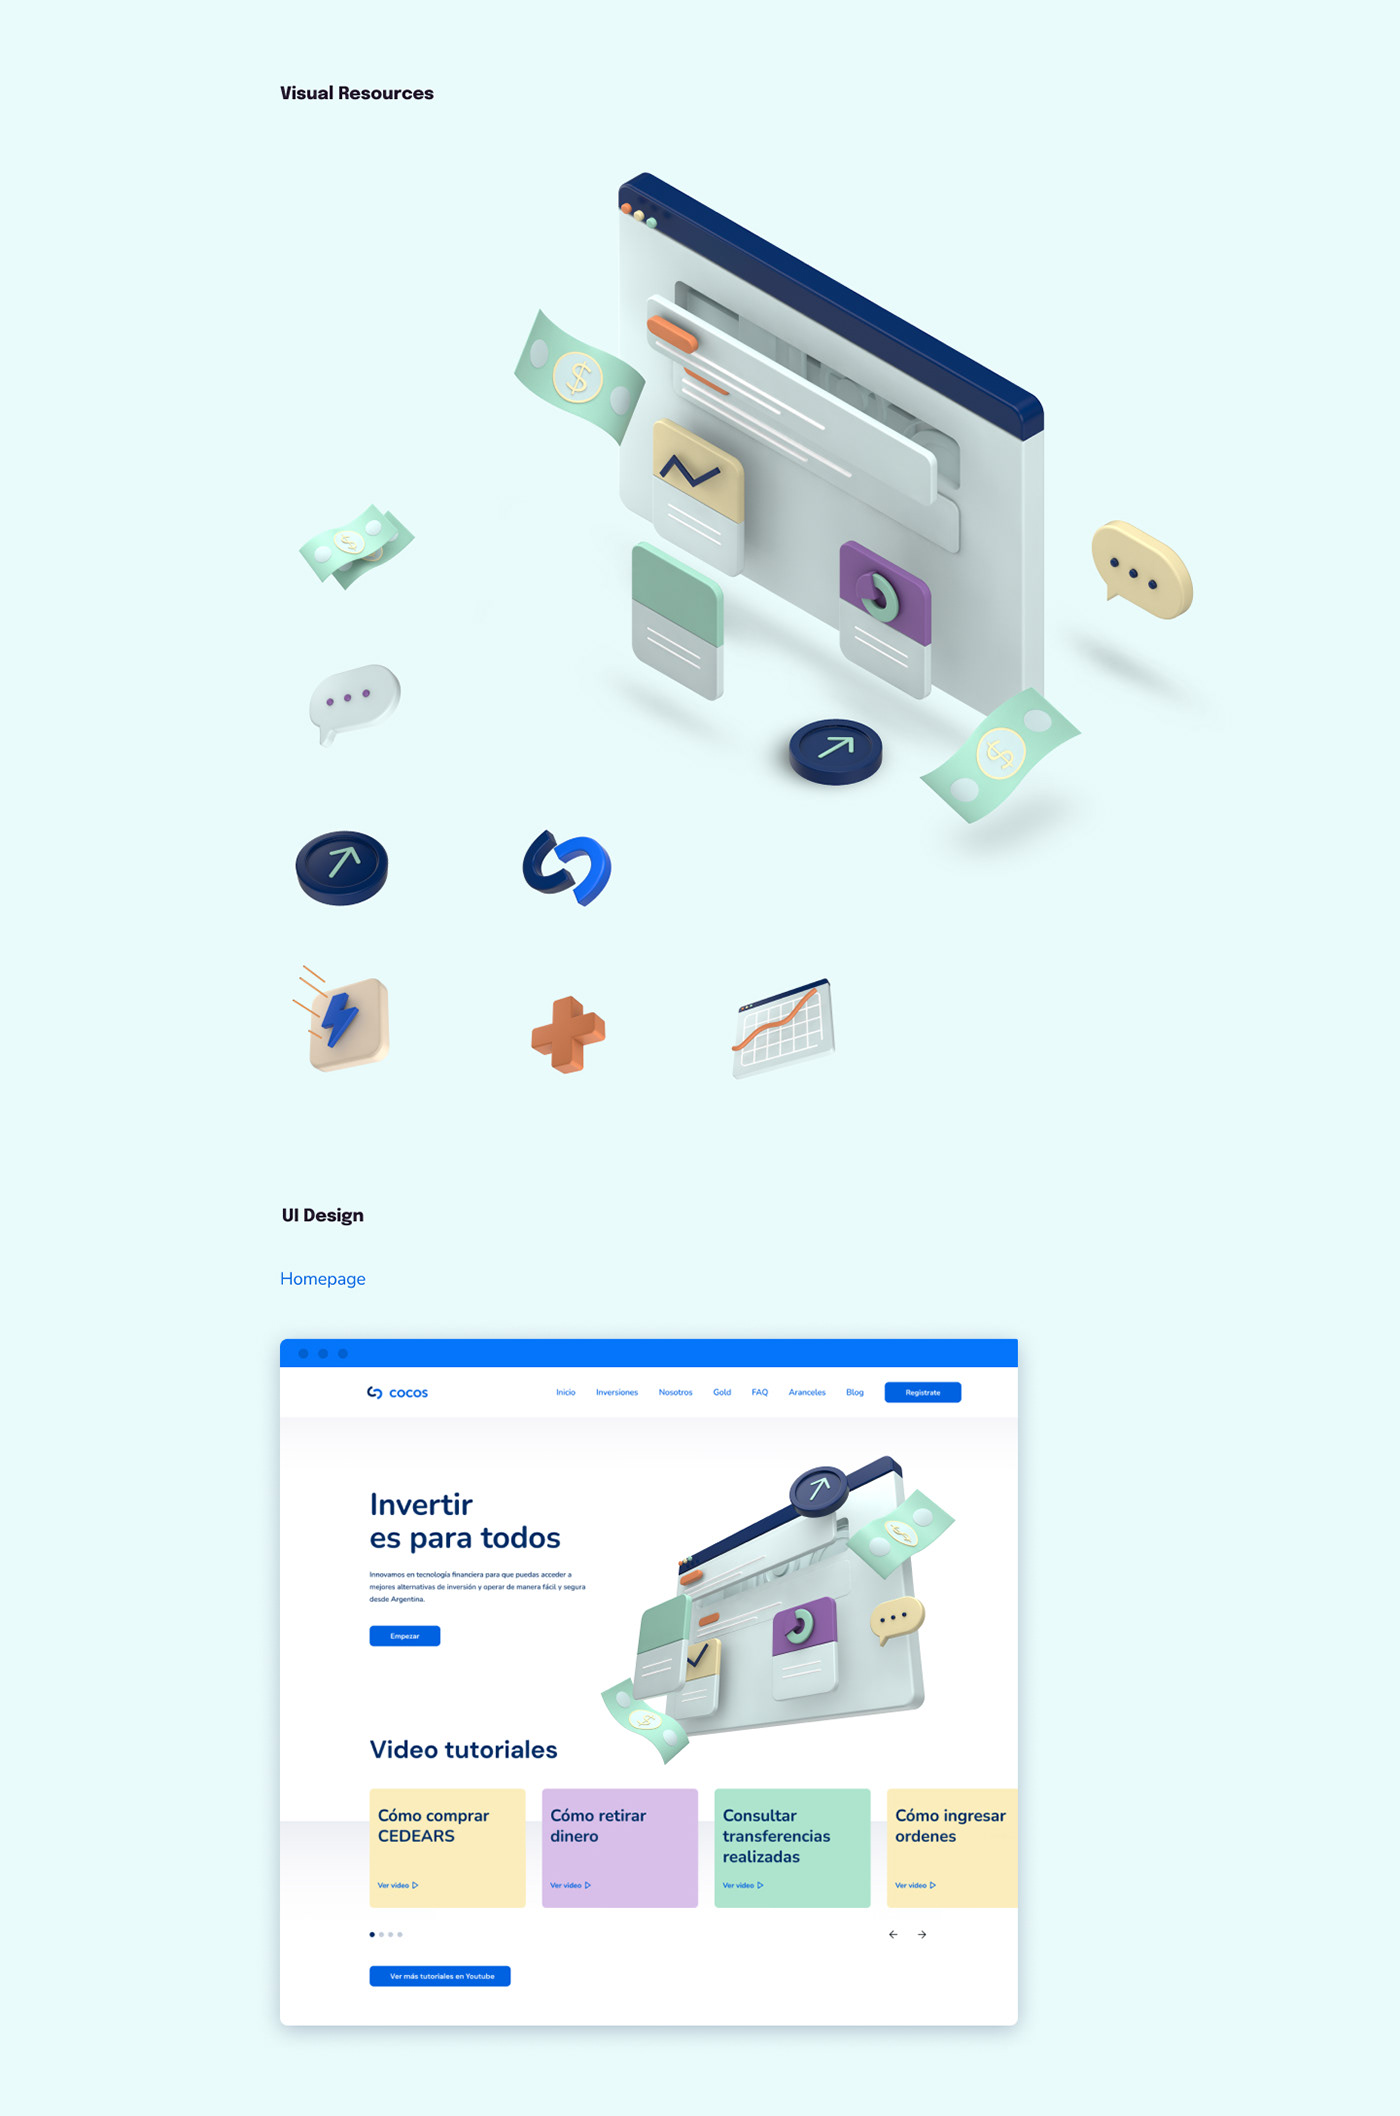 3D illustration brand identity Investment Mobile app Platform product design  Stock market UI/UX workshops